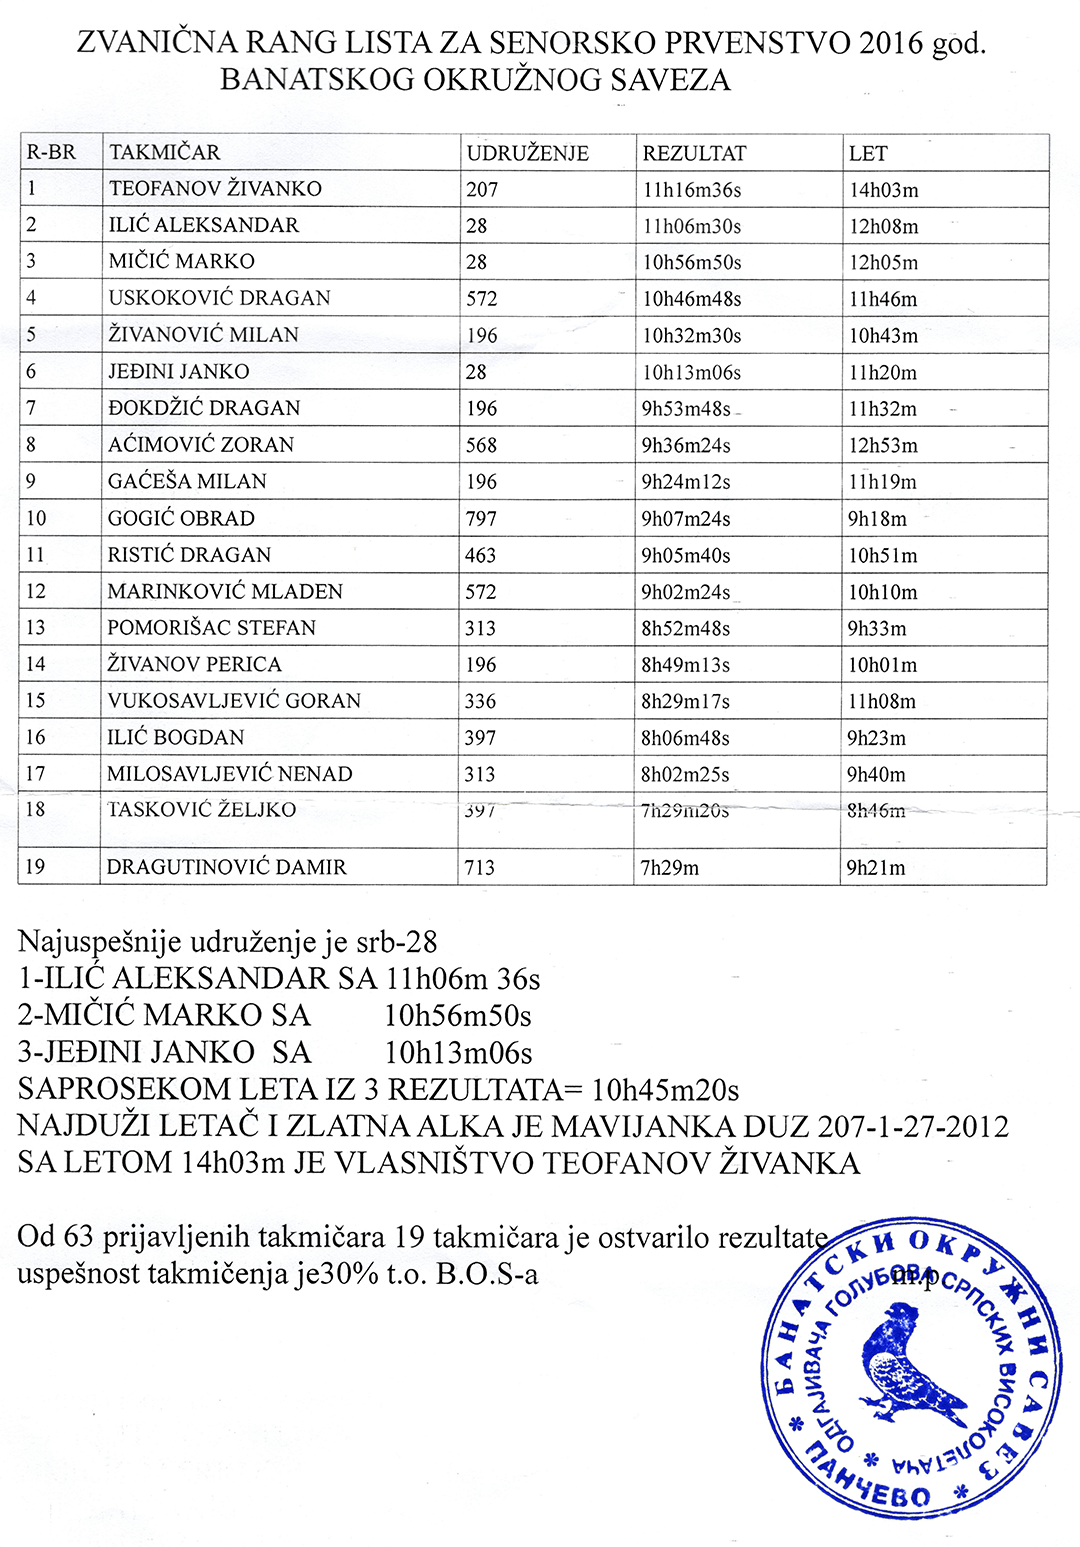 Званична ранг листа Банатског окружног савеза за сениорско првенство 2016. године